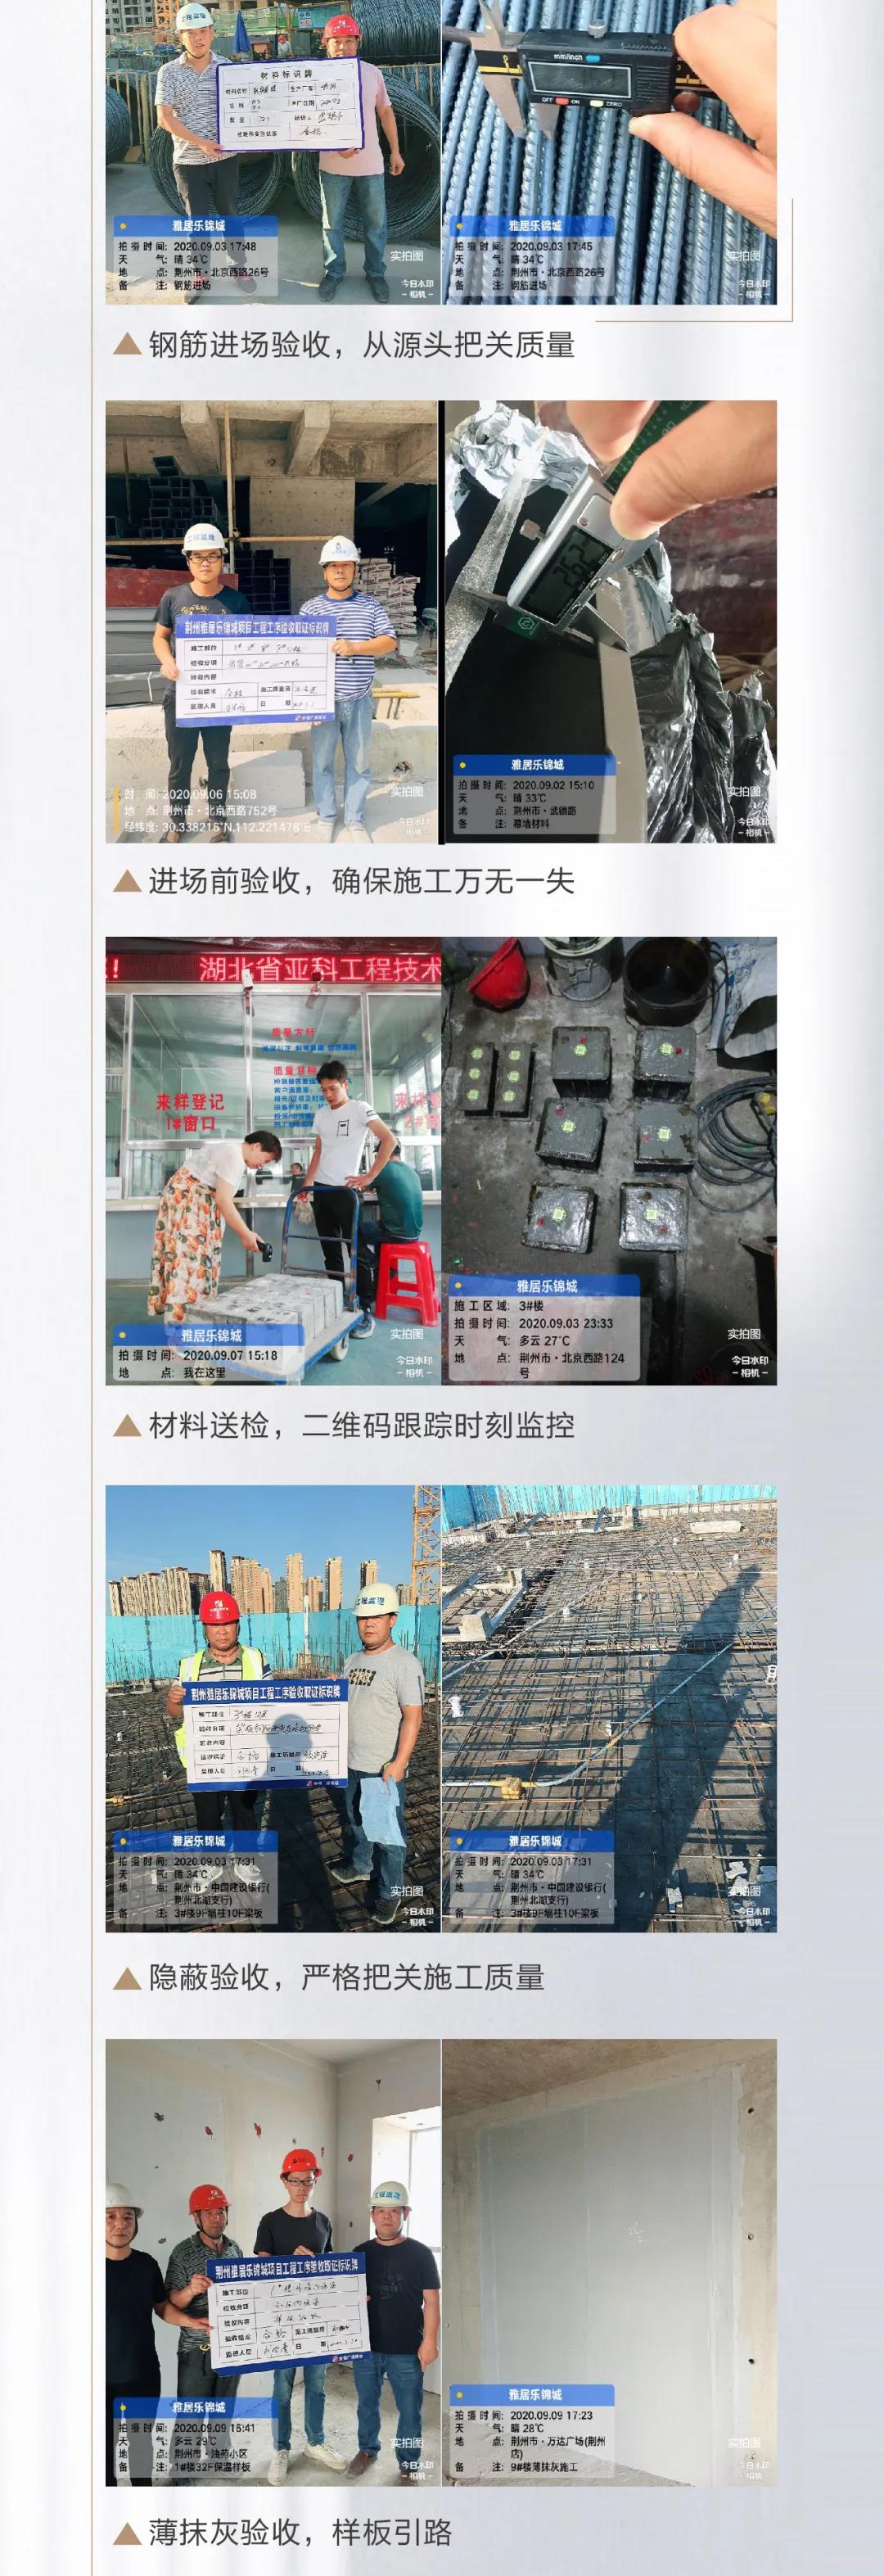 雅居乐锦城 |9月项目进度 1、2、8、9#楼封顶